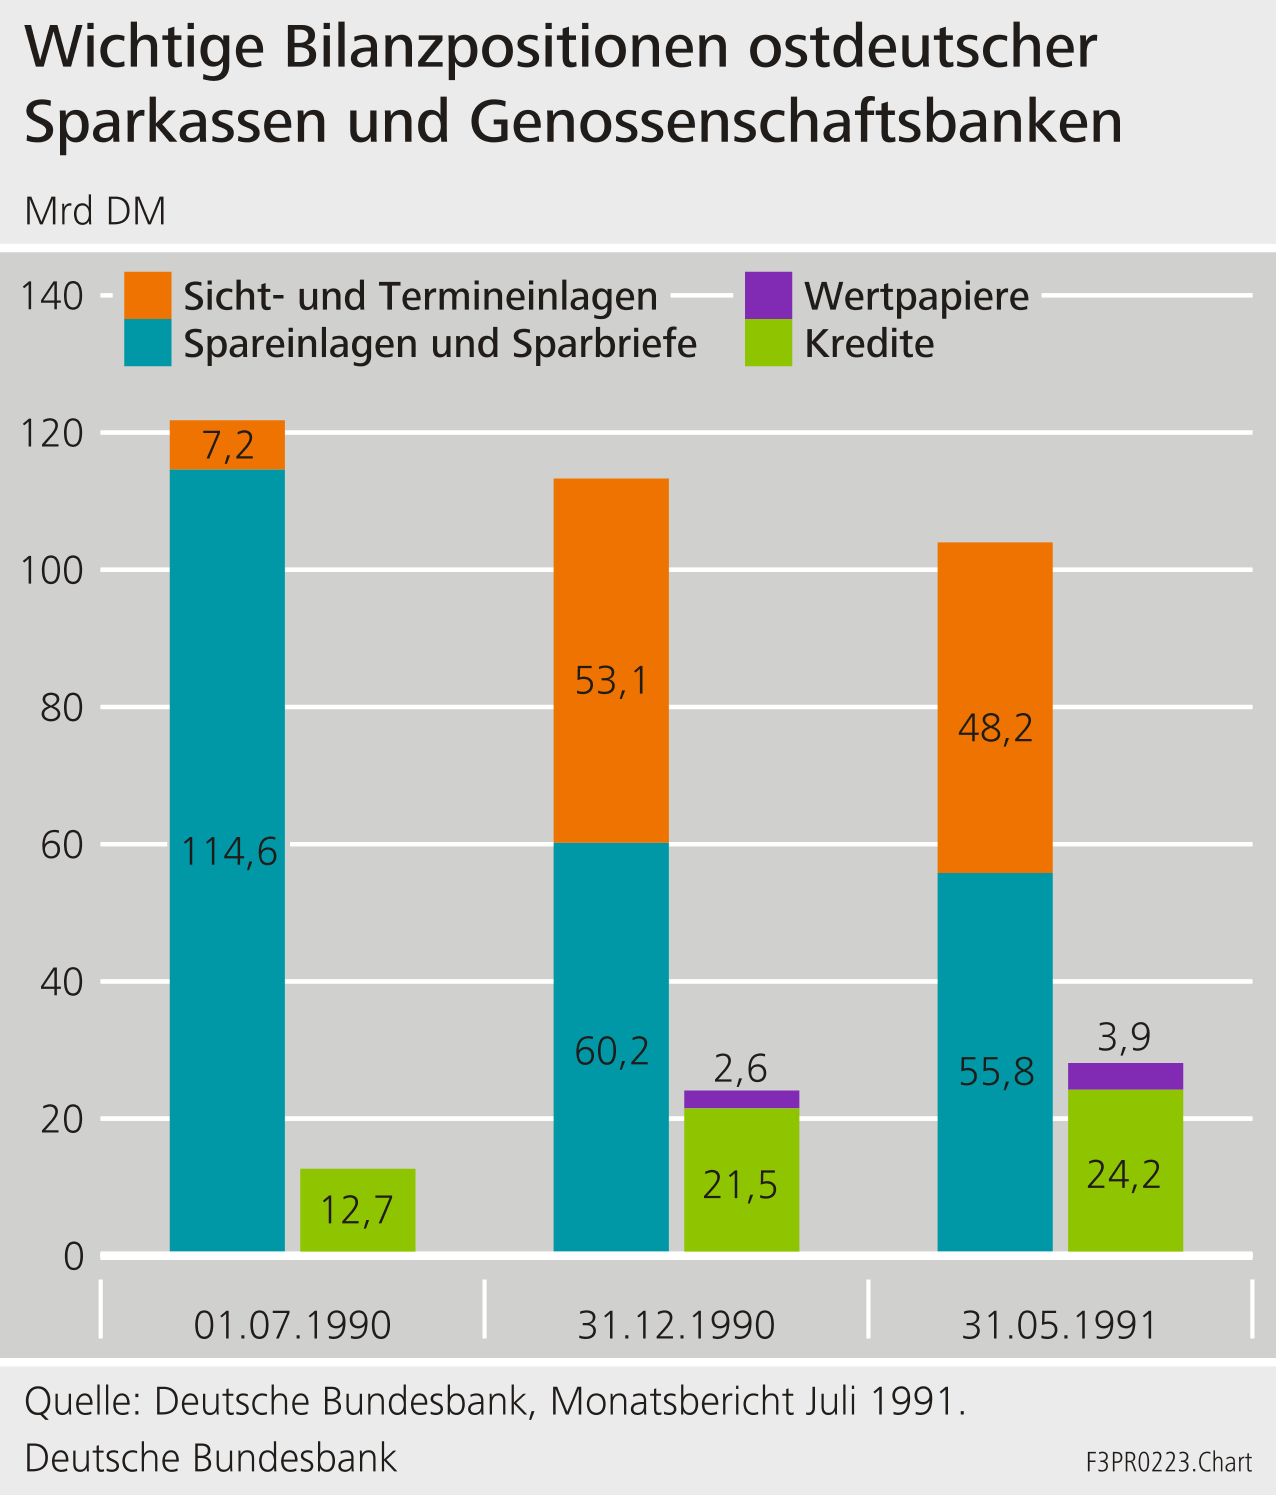 Wichtige Bilanzpositionen ostdeutscher Sparkassen und Genossenschaften